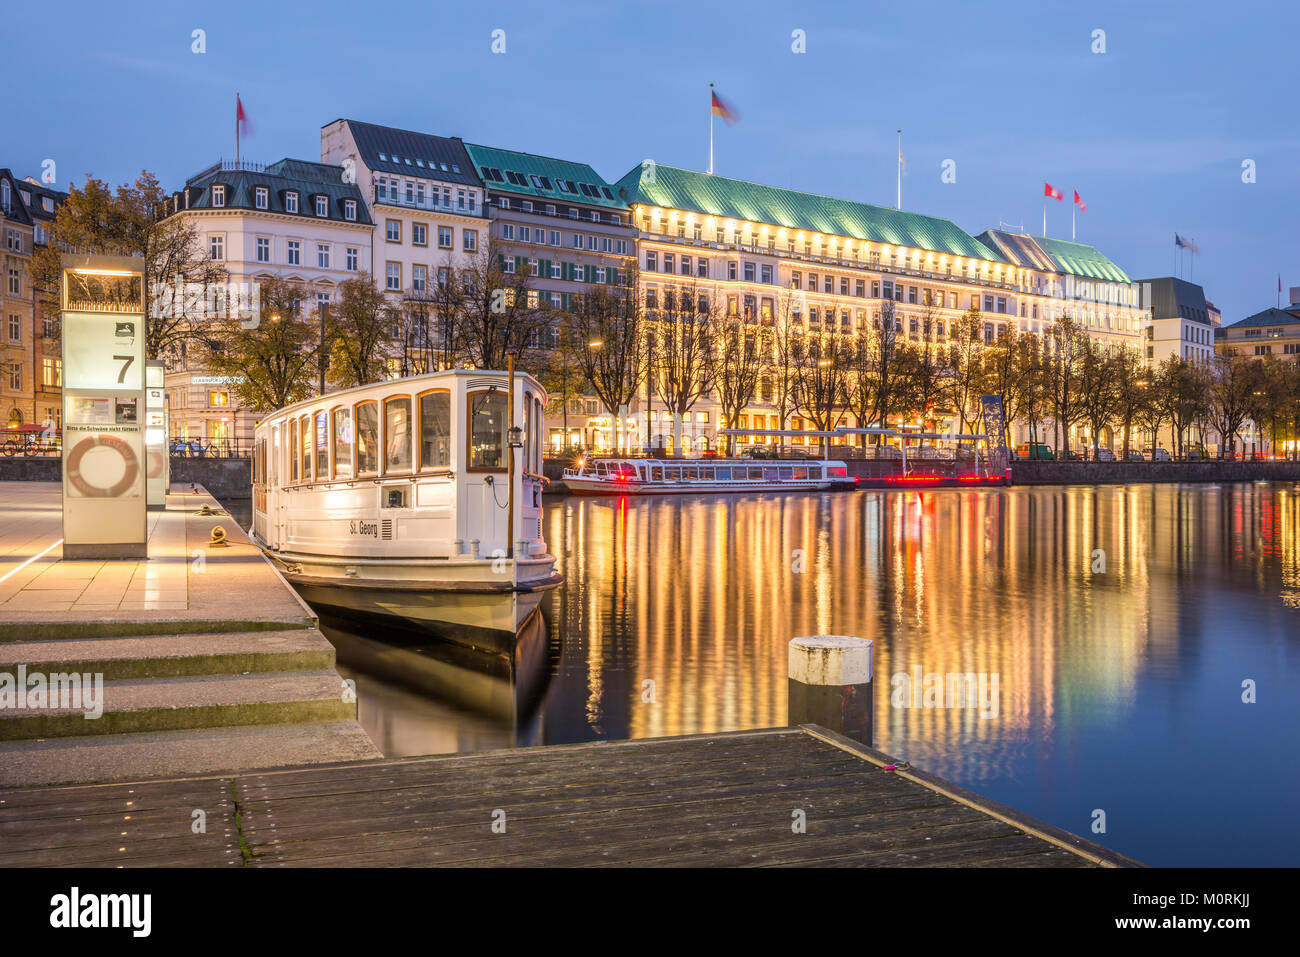 Allemagne, Hambourg, le lac Inner Alster, l'hôtel Vier Jahreszeiten, heure bleue Banque D'Images